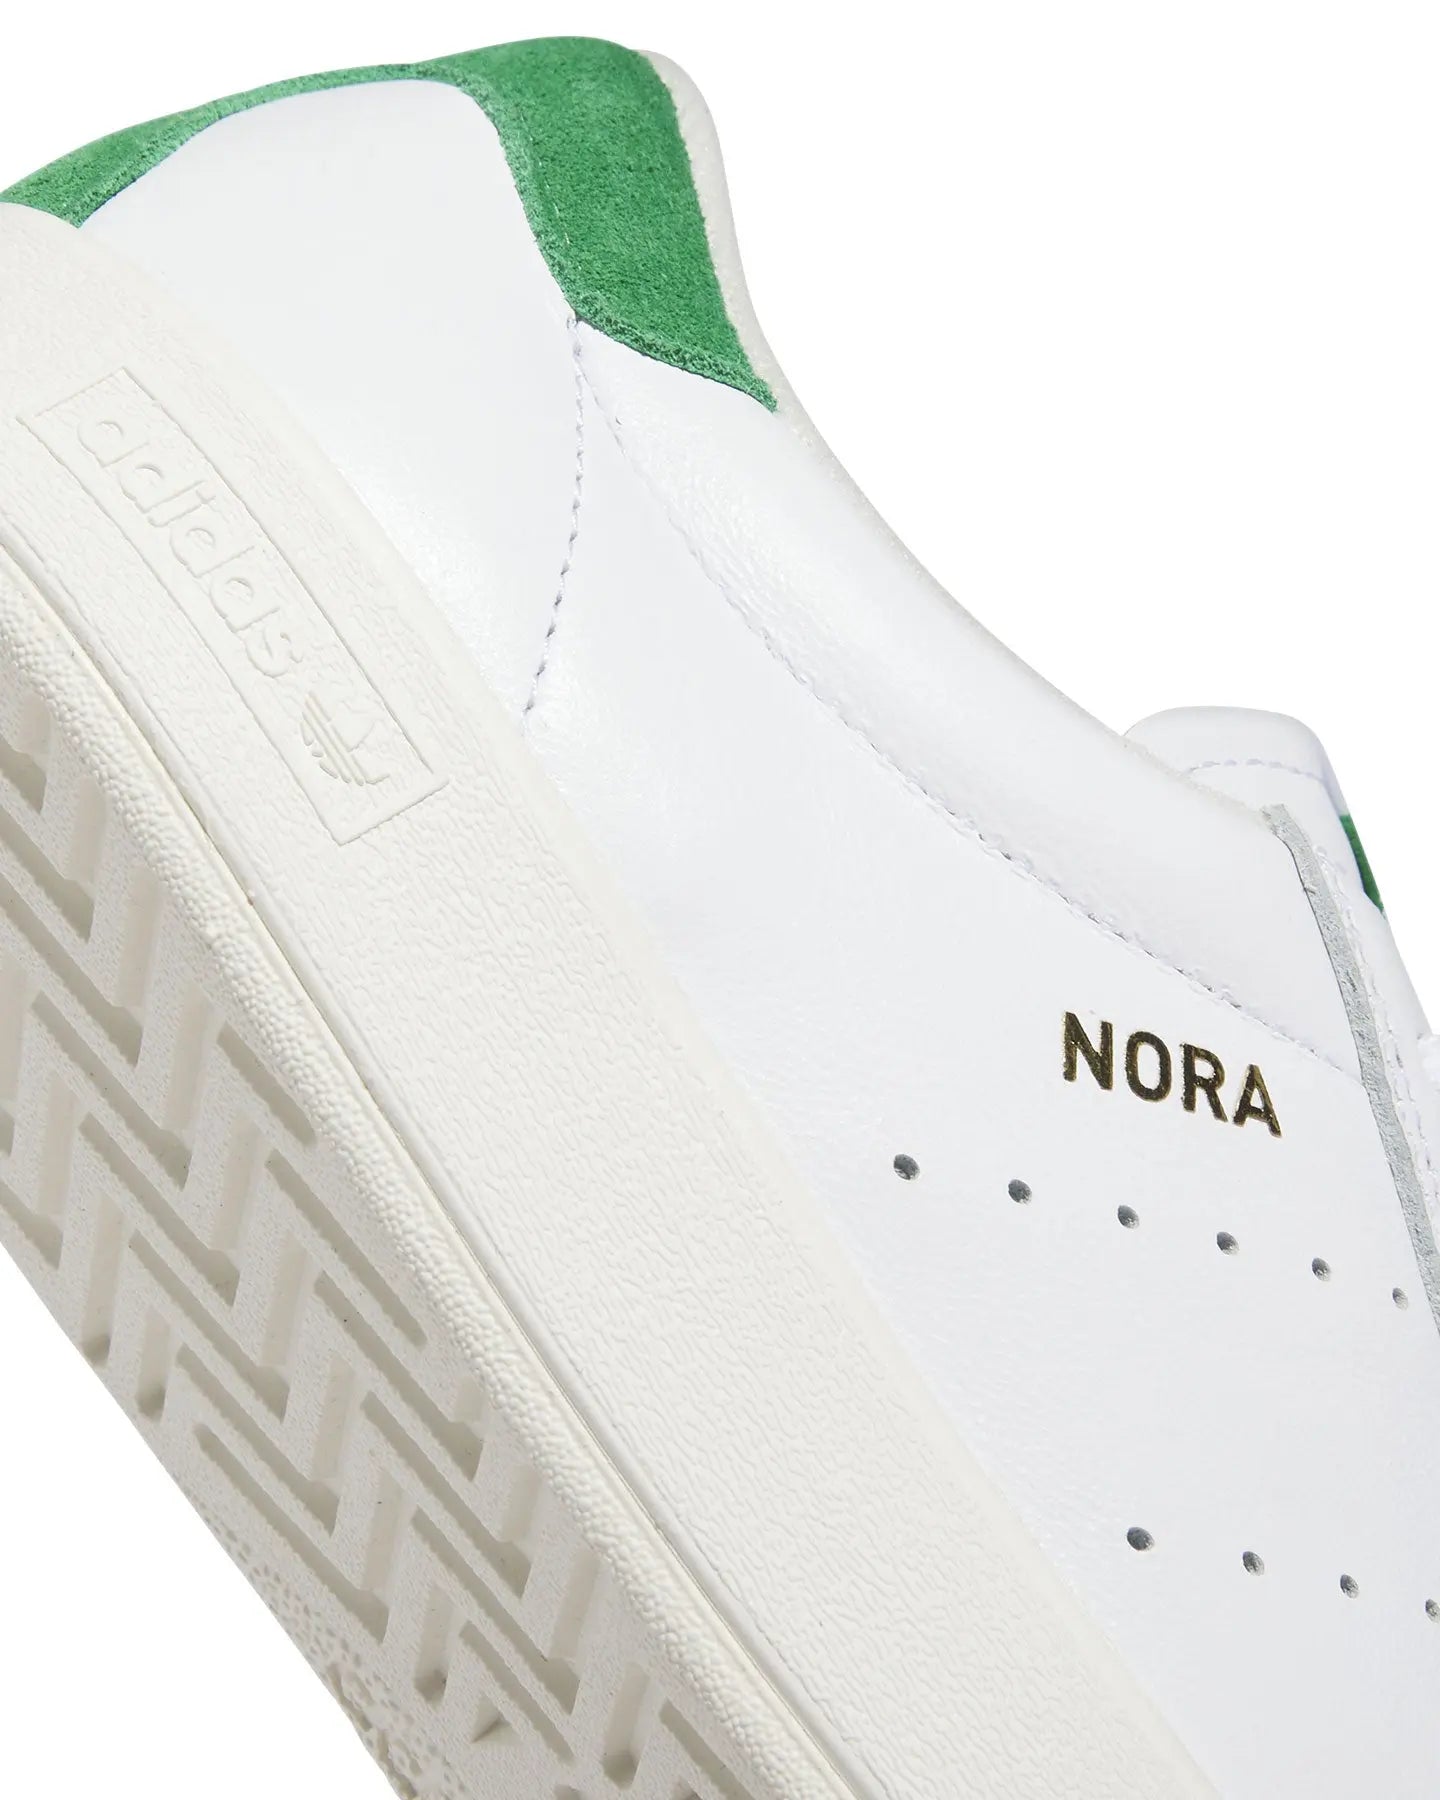 Adidas Nora - White / White / White Footwear